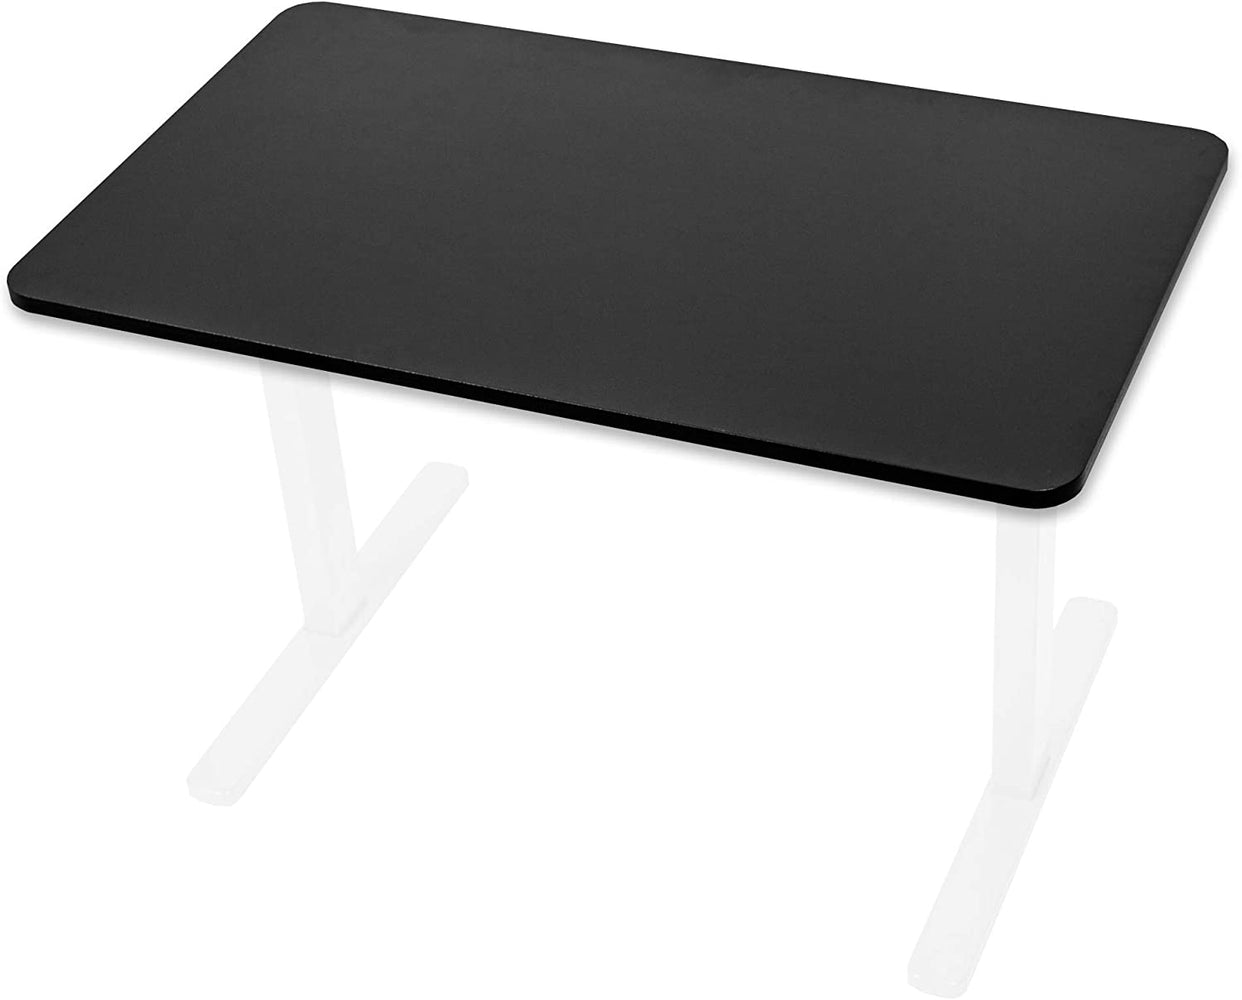 Duronic TT127 BK Tablero para marco de escritorio de 120x70 cm negro compatible con los marcos Duronic TM23, TM22, TM00, TM12 – Mejore su postura corporal con una estación de trabajo ergonómica